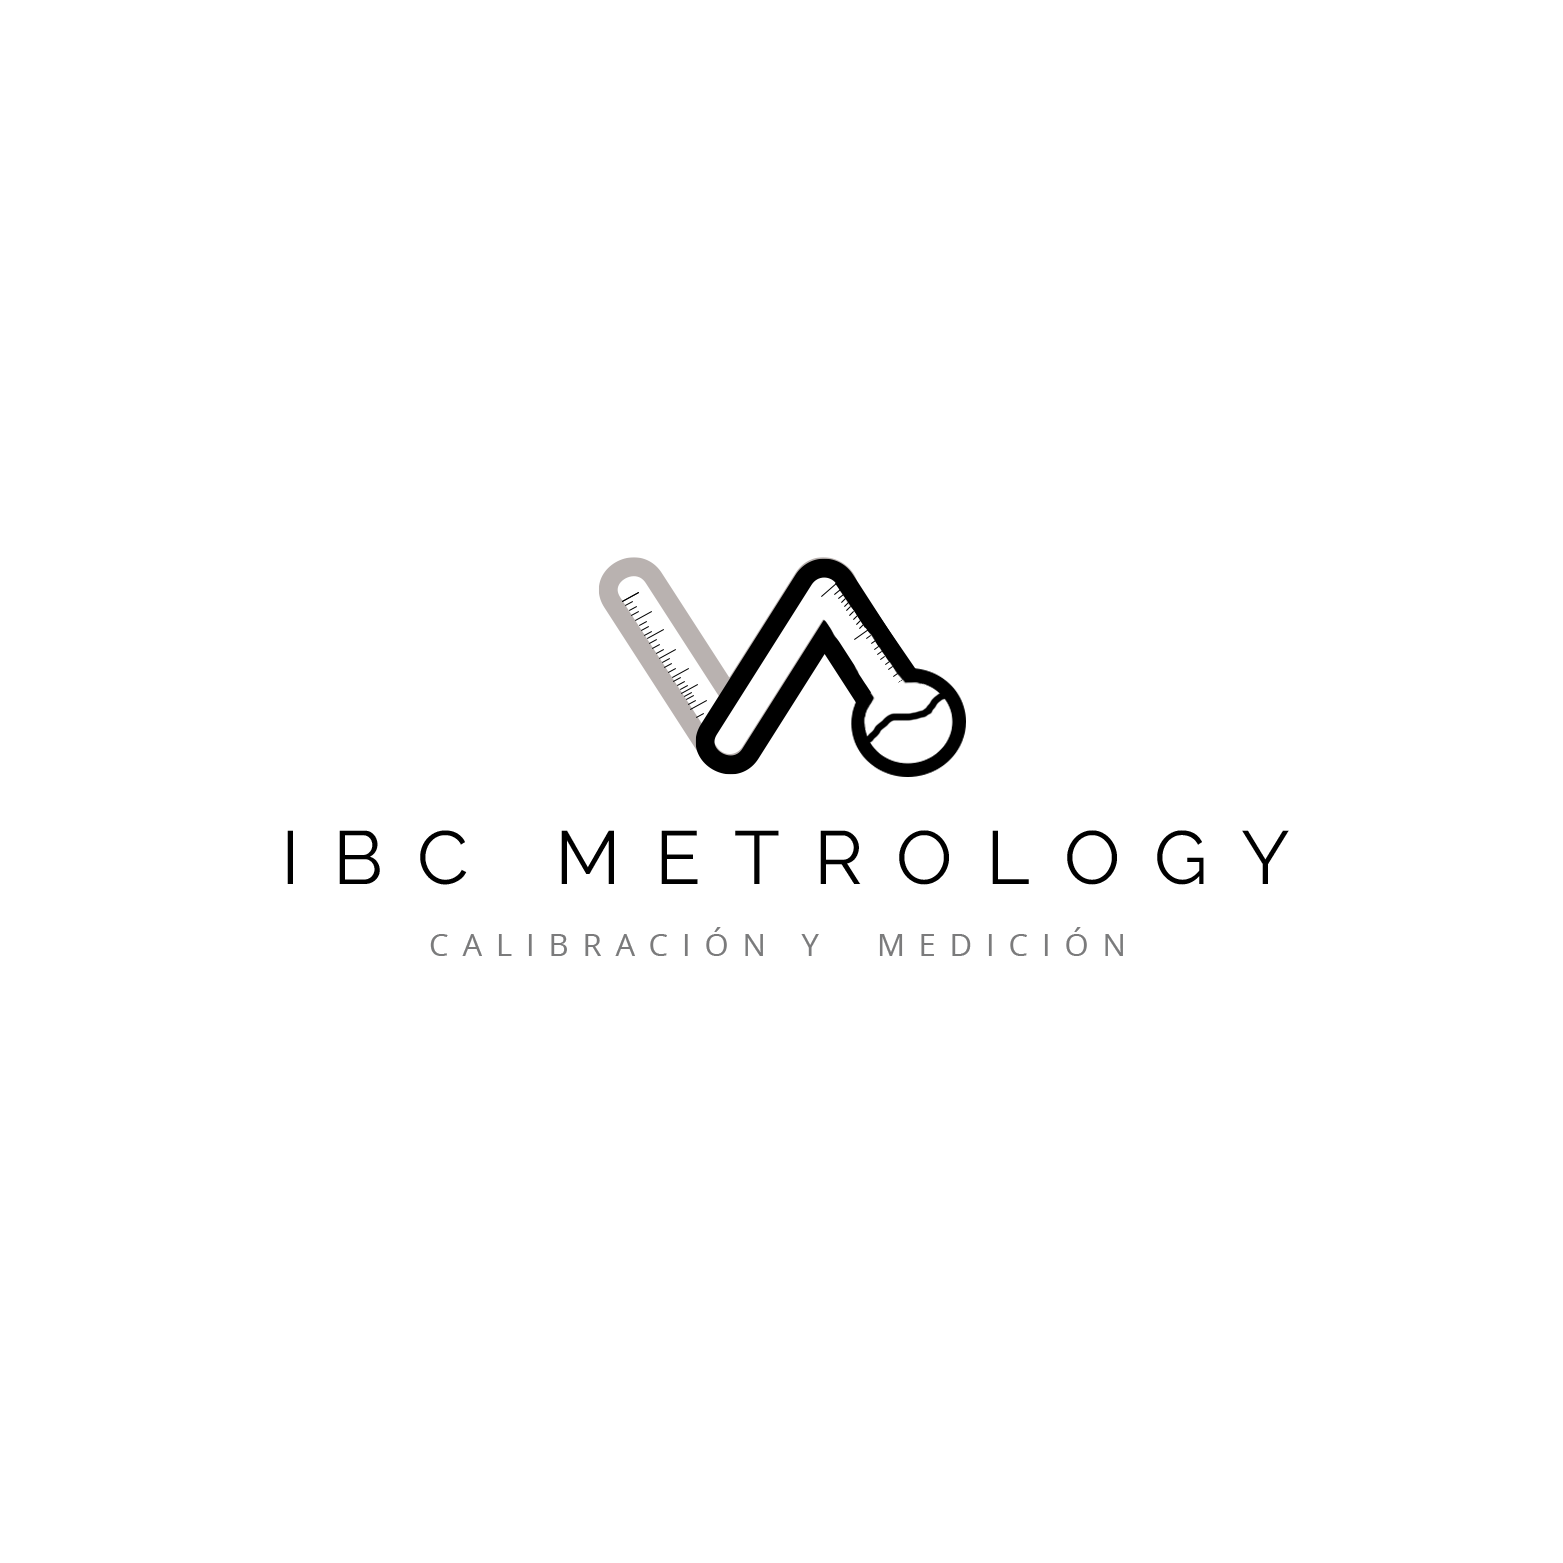 IBC METROLOGY